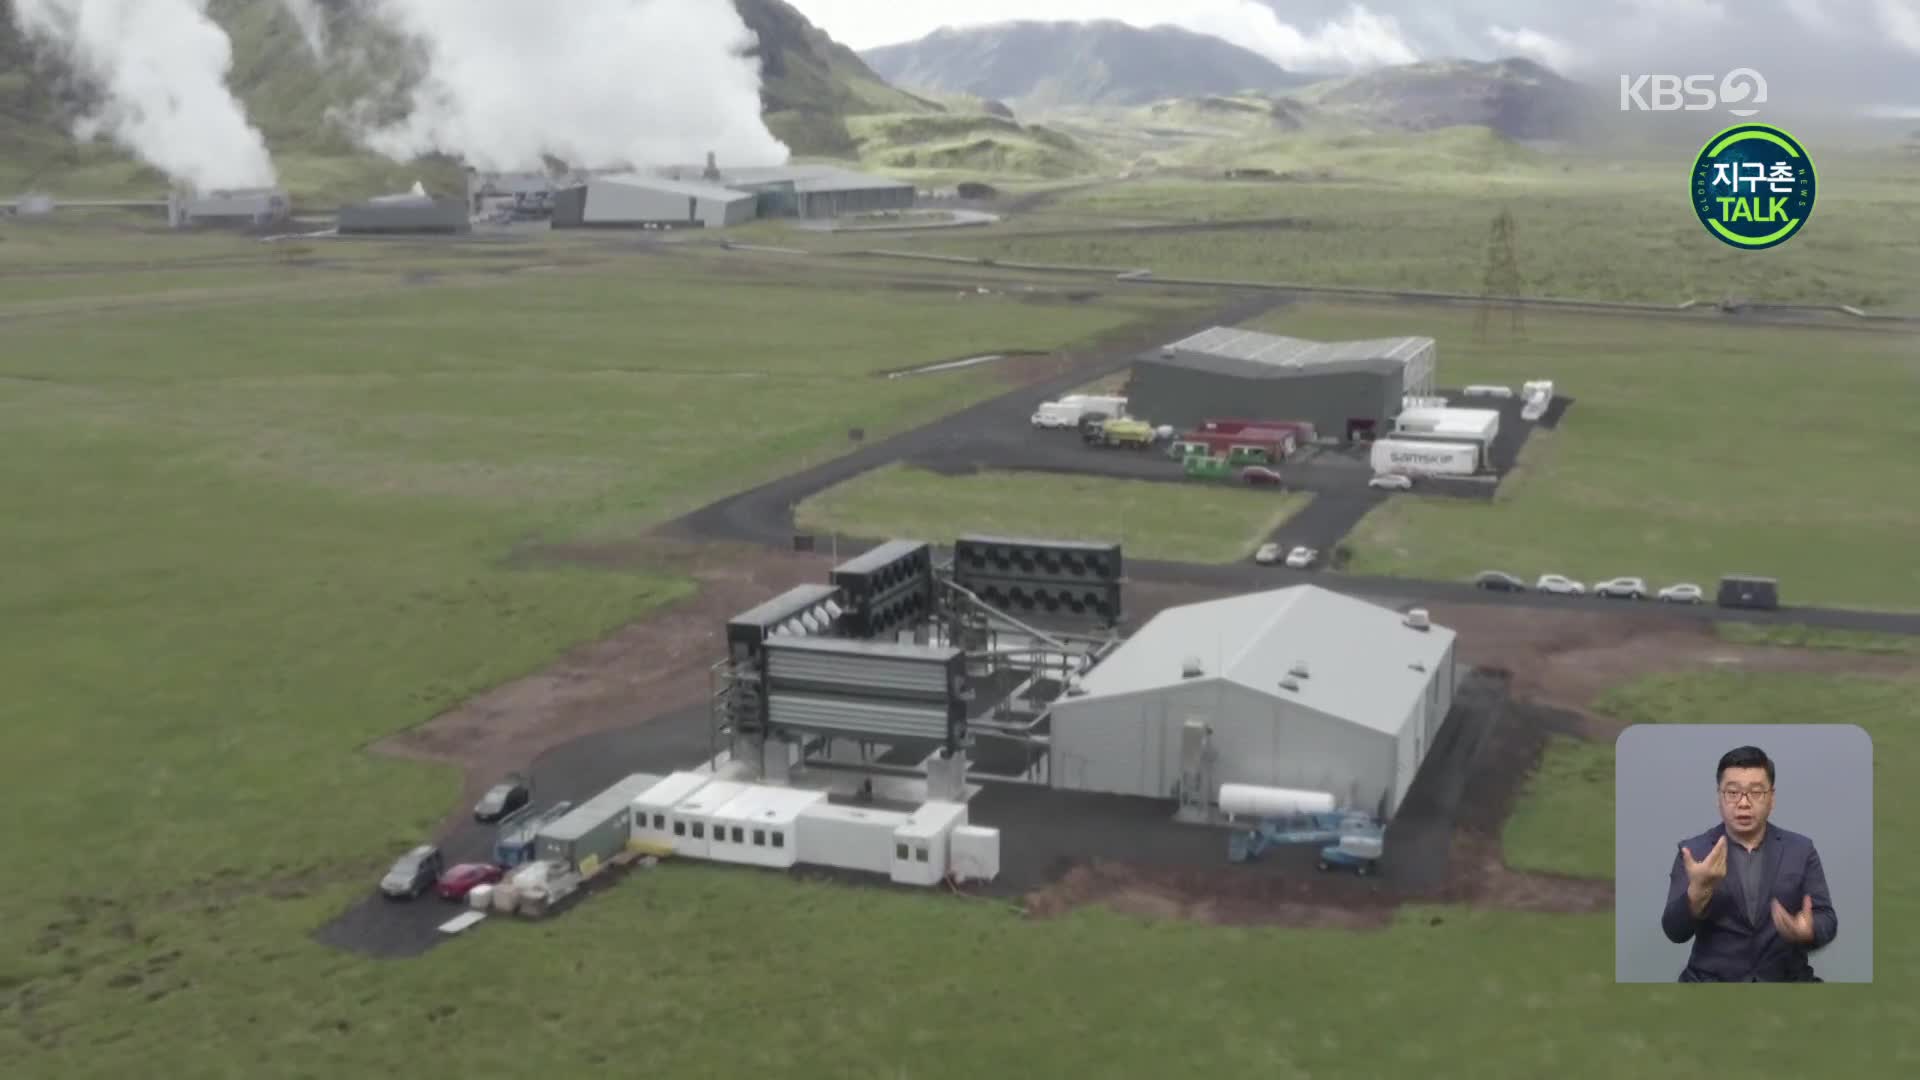 [지구촌 Talk] 이산화탄소 잡는 청정 발전소, 아이슬란드서 가동